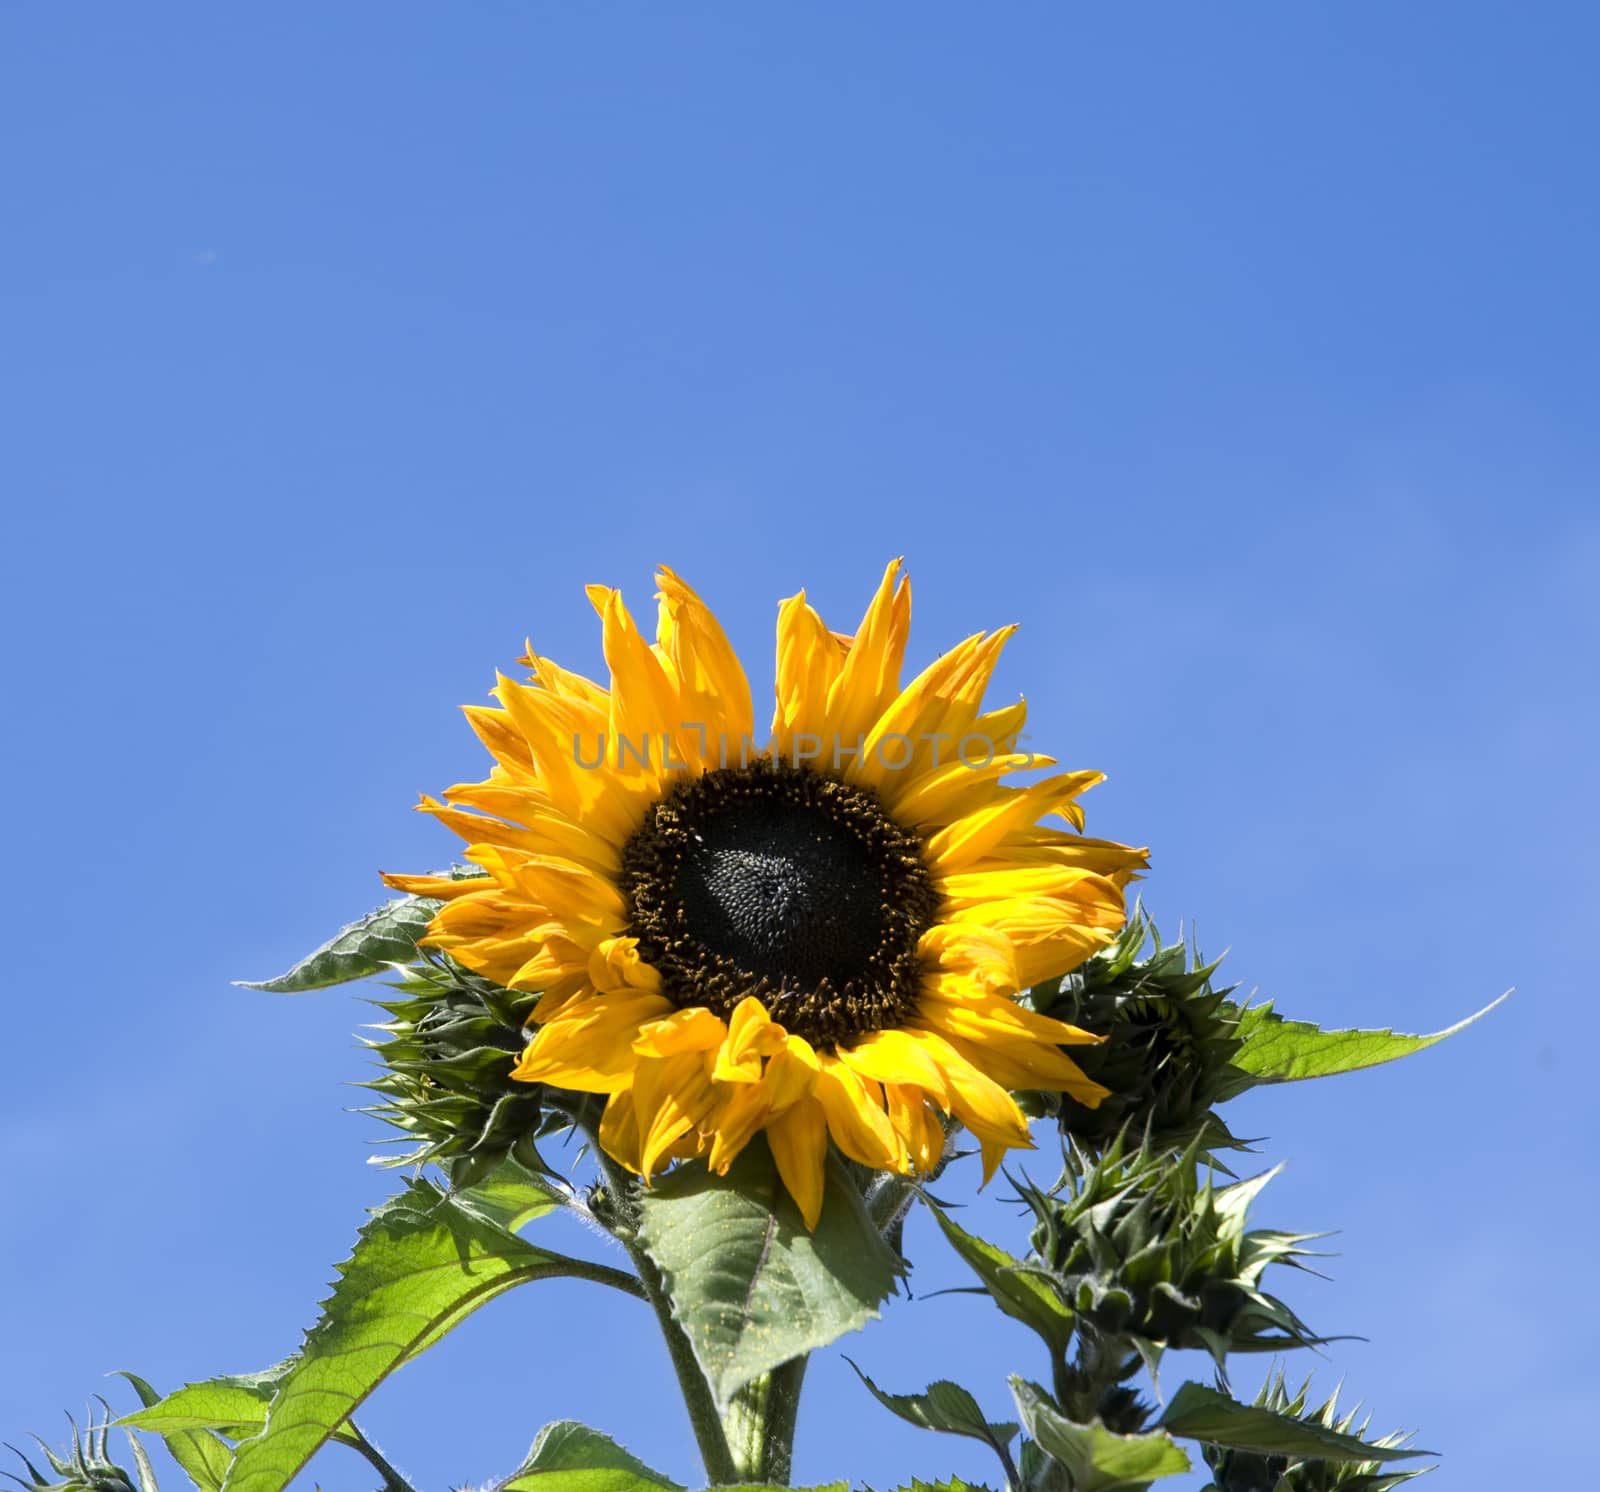 A sunflower against a blue sky